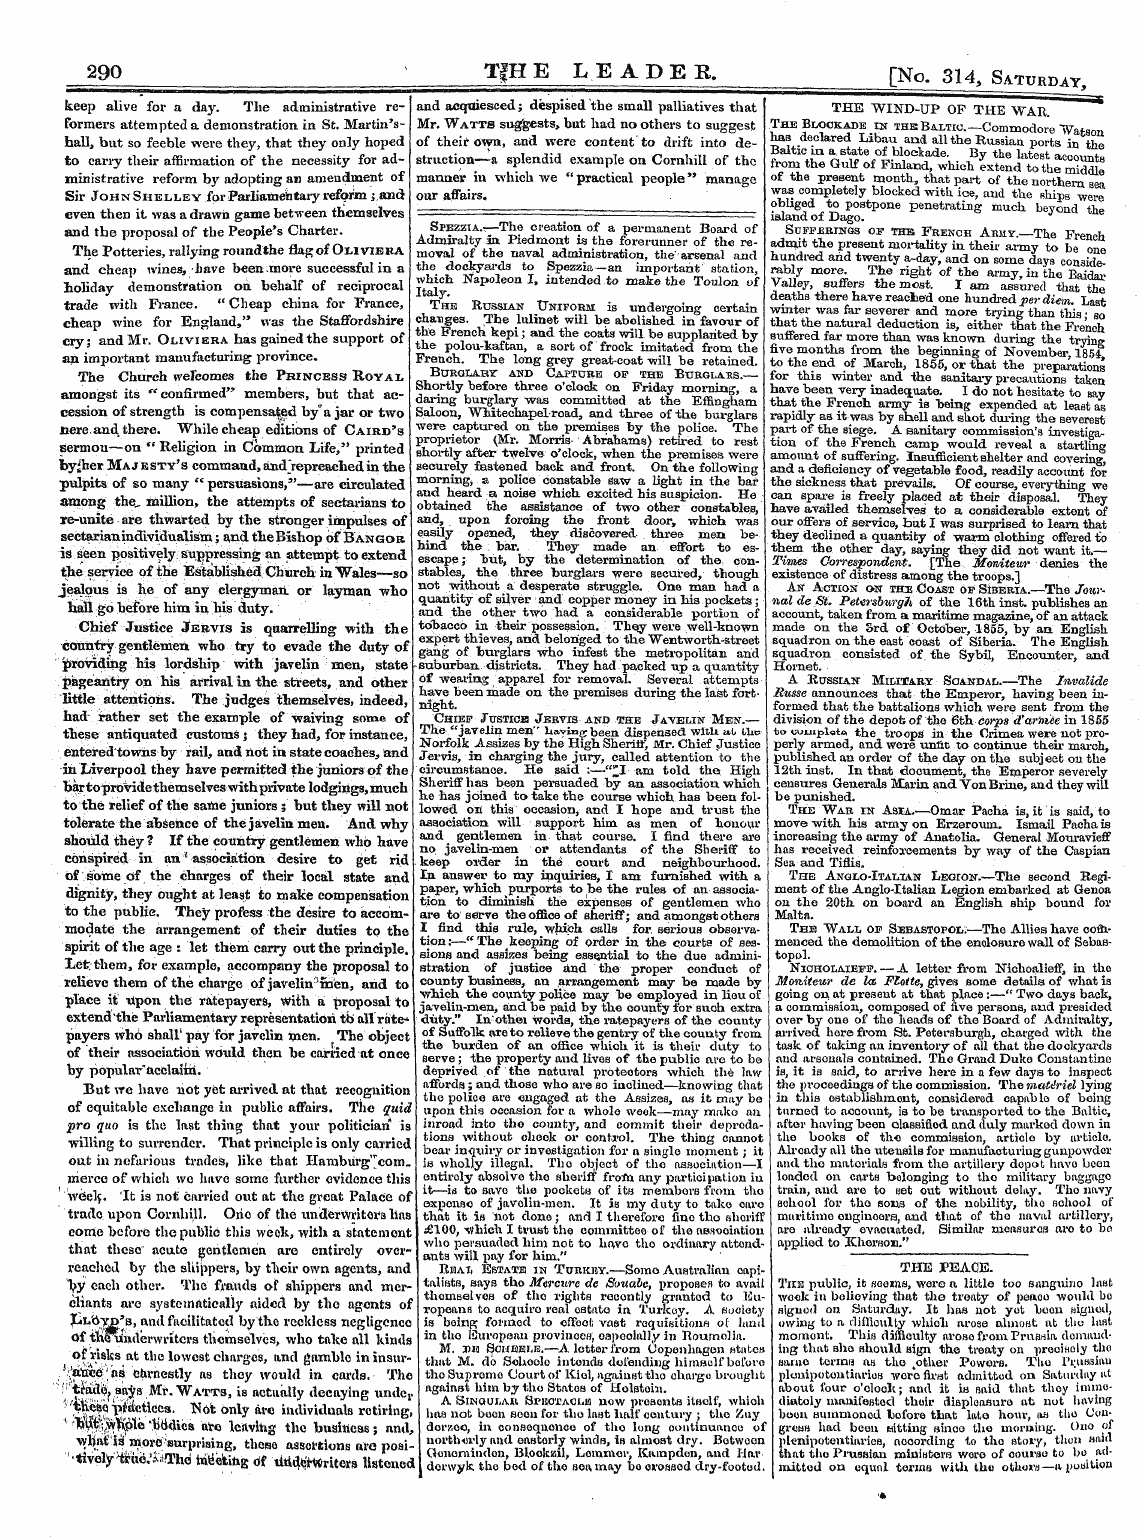 Leader (1850-1860): jS F Y, 2nd edition - 290 ' Tfhe Leader. [No. 314, Saturd.V